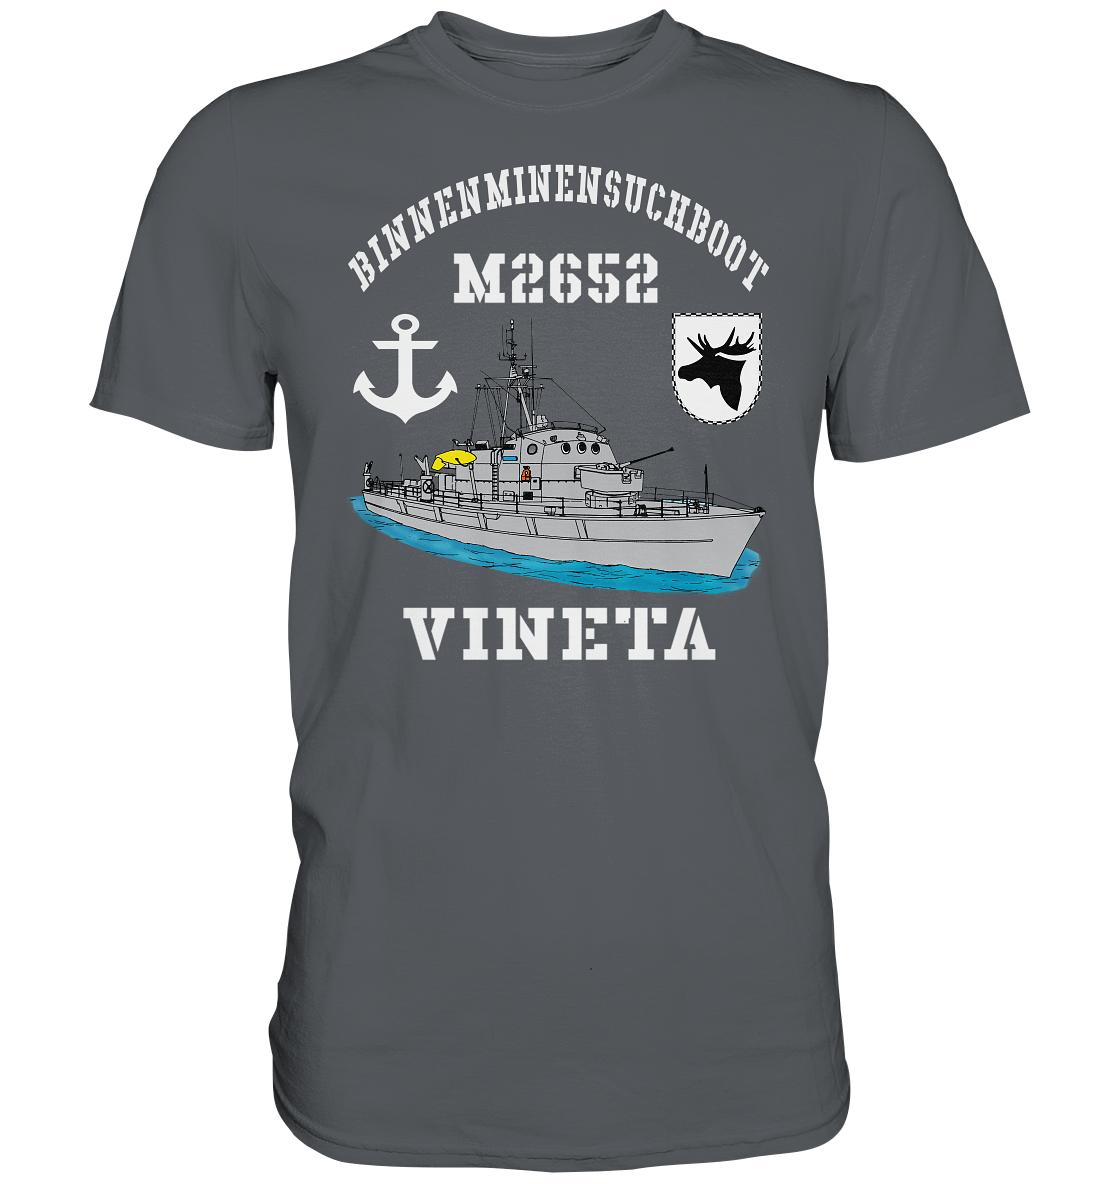 BIMI M2652 VINETA 3.MSG Anker - Premium Shirt